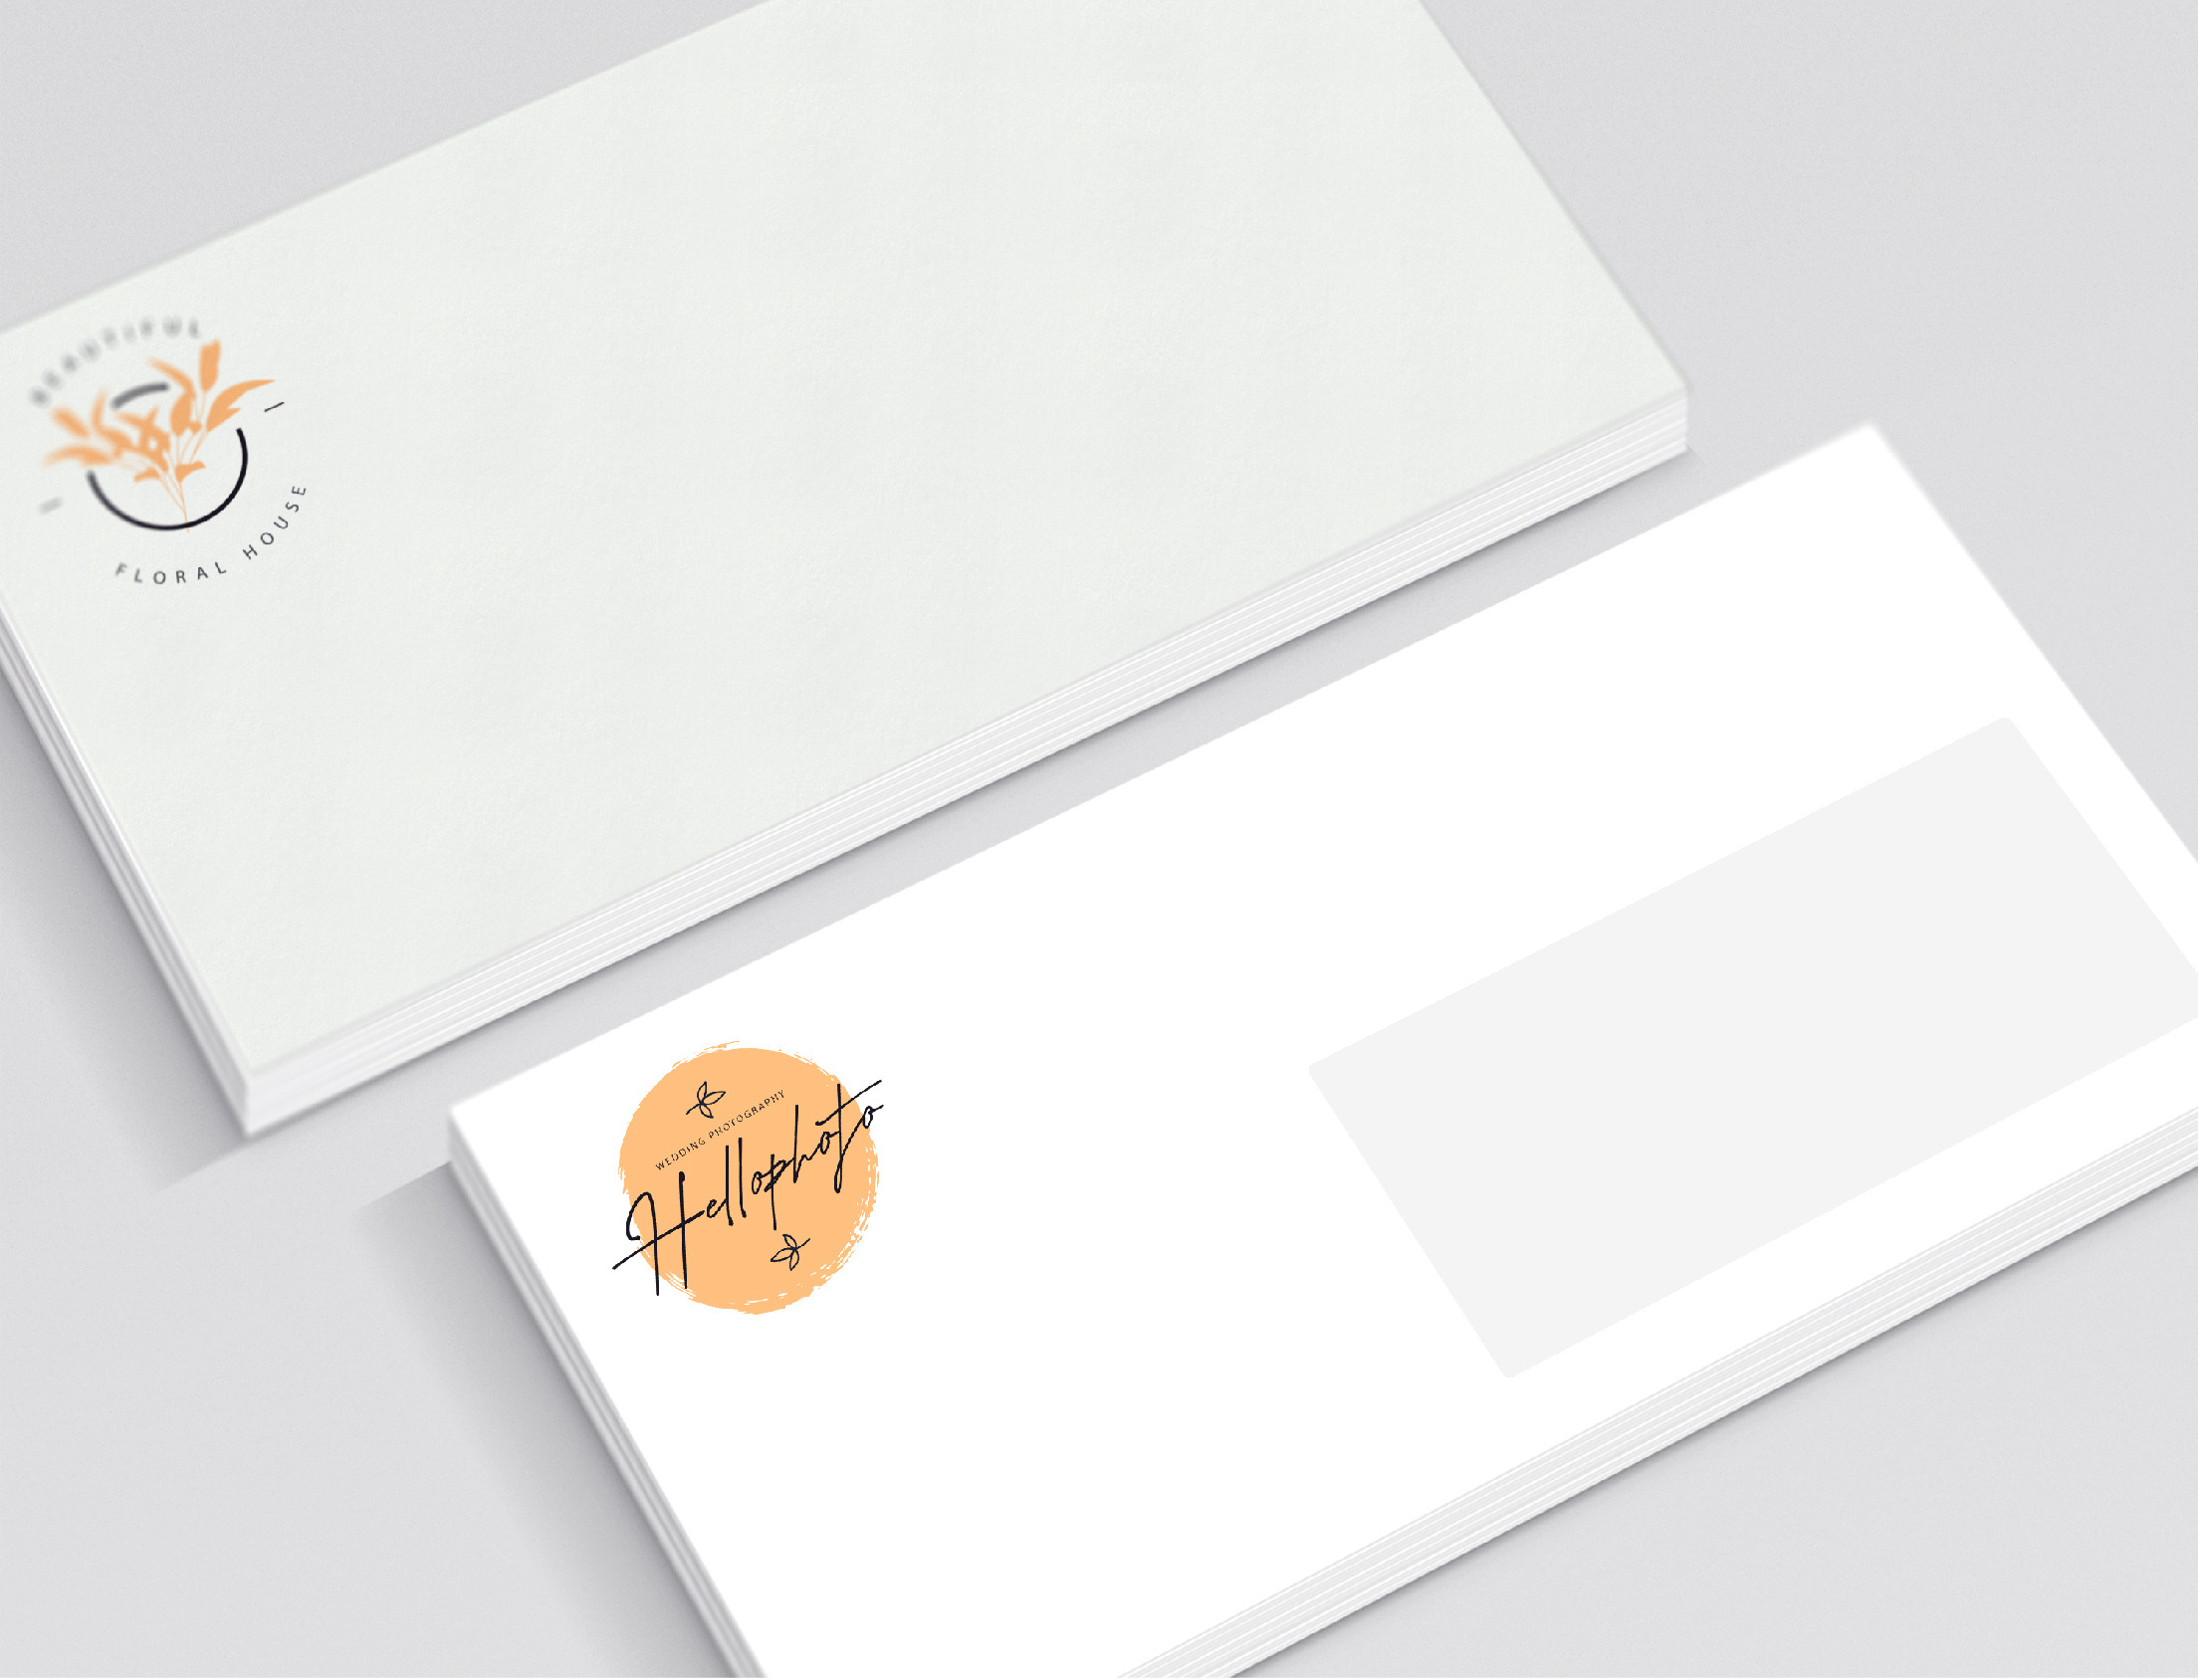 Pochette de 10 enveloppes A4 blanche auto adhésive 229 x 324 - Enveloppes  et pochettes - Papier et enveloppes - Fourniture de bureau - Tous ALL WHAT  OFFICE NEEDS